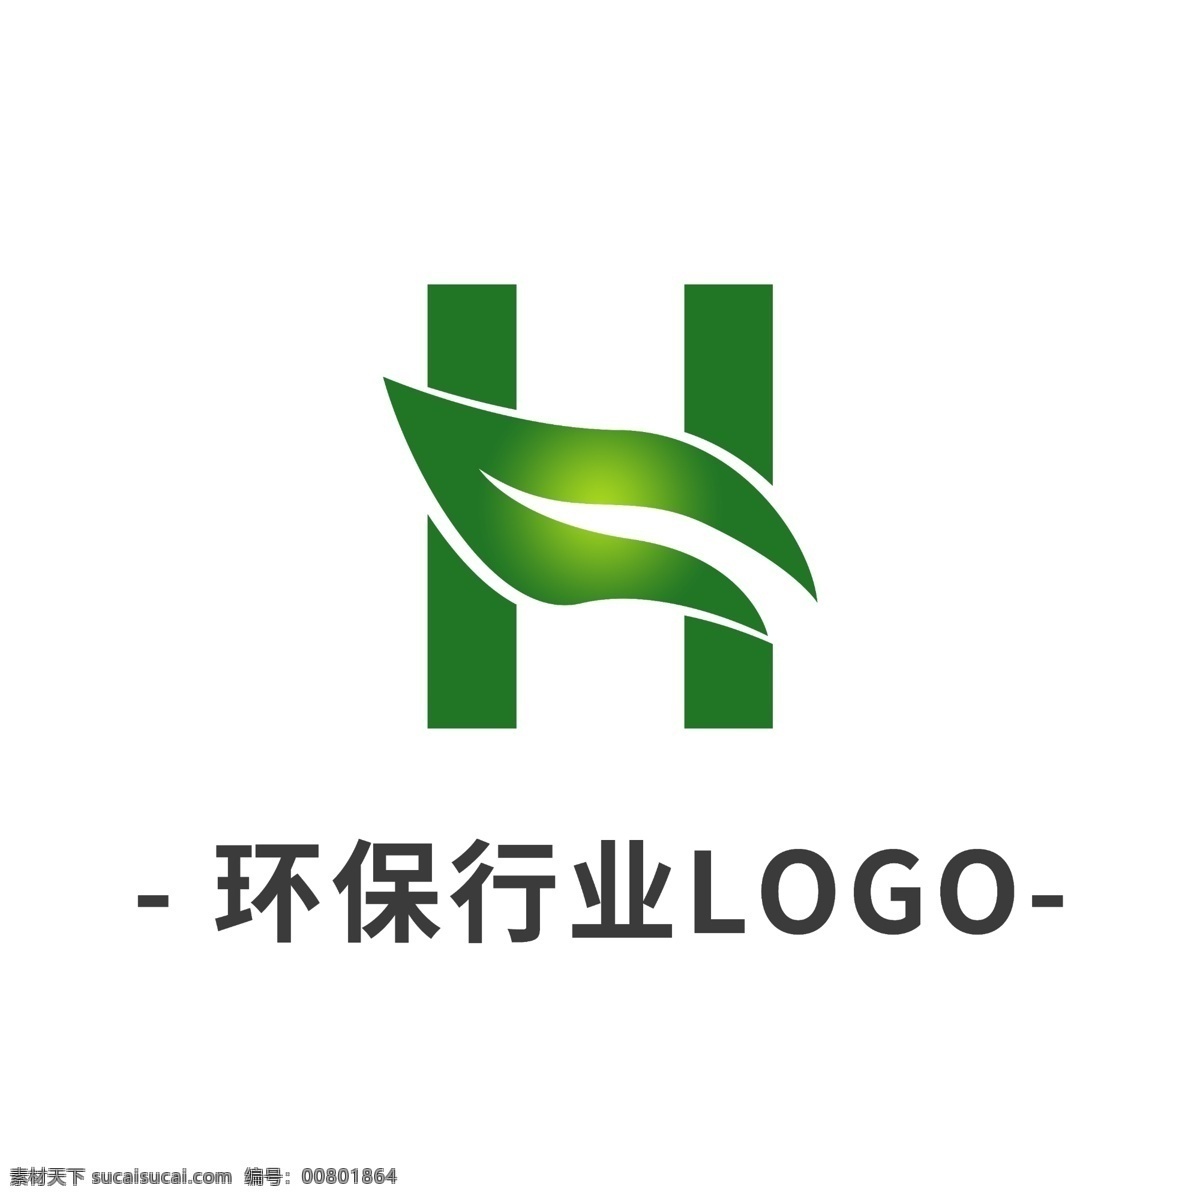 简约 环保 logo 标志 模板